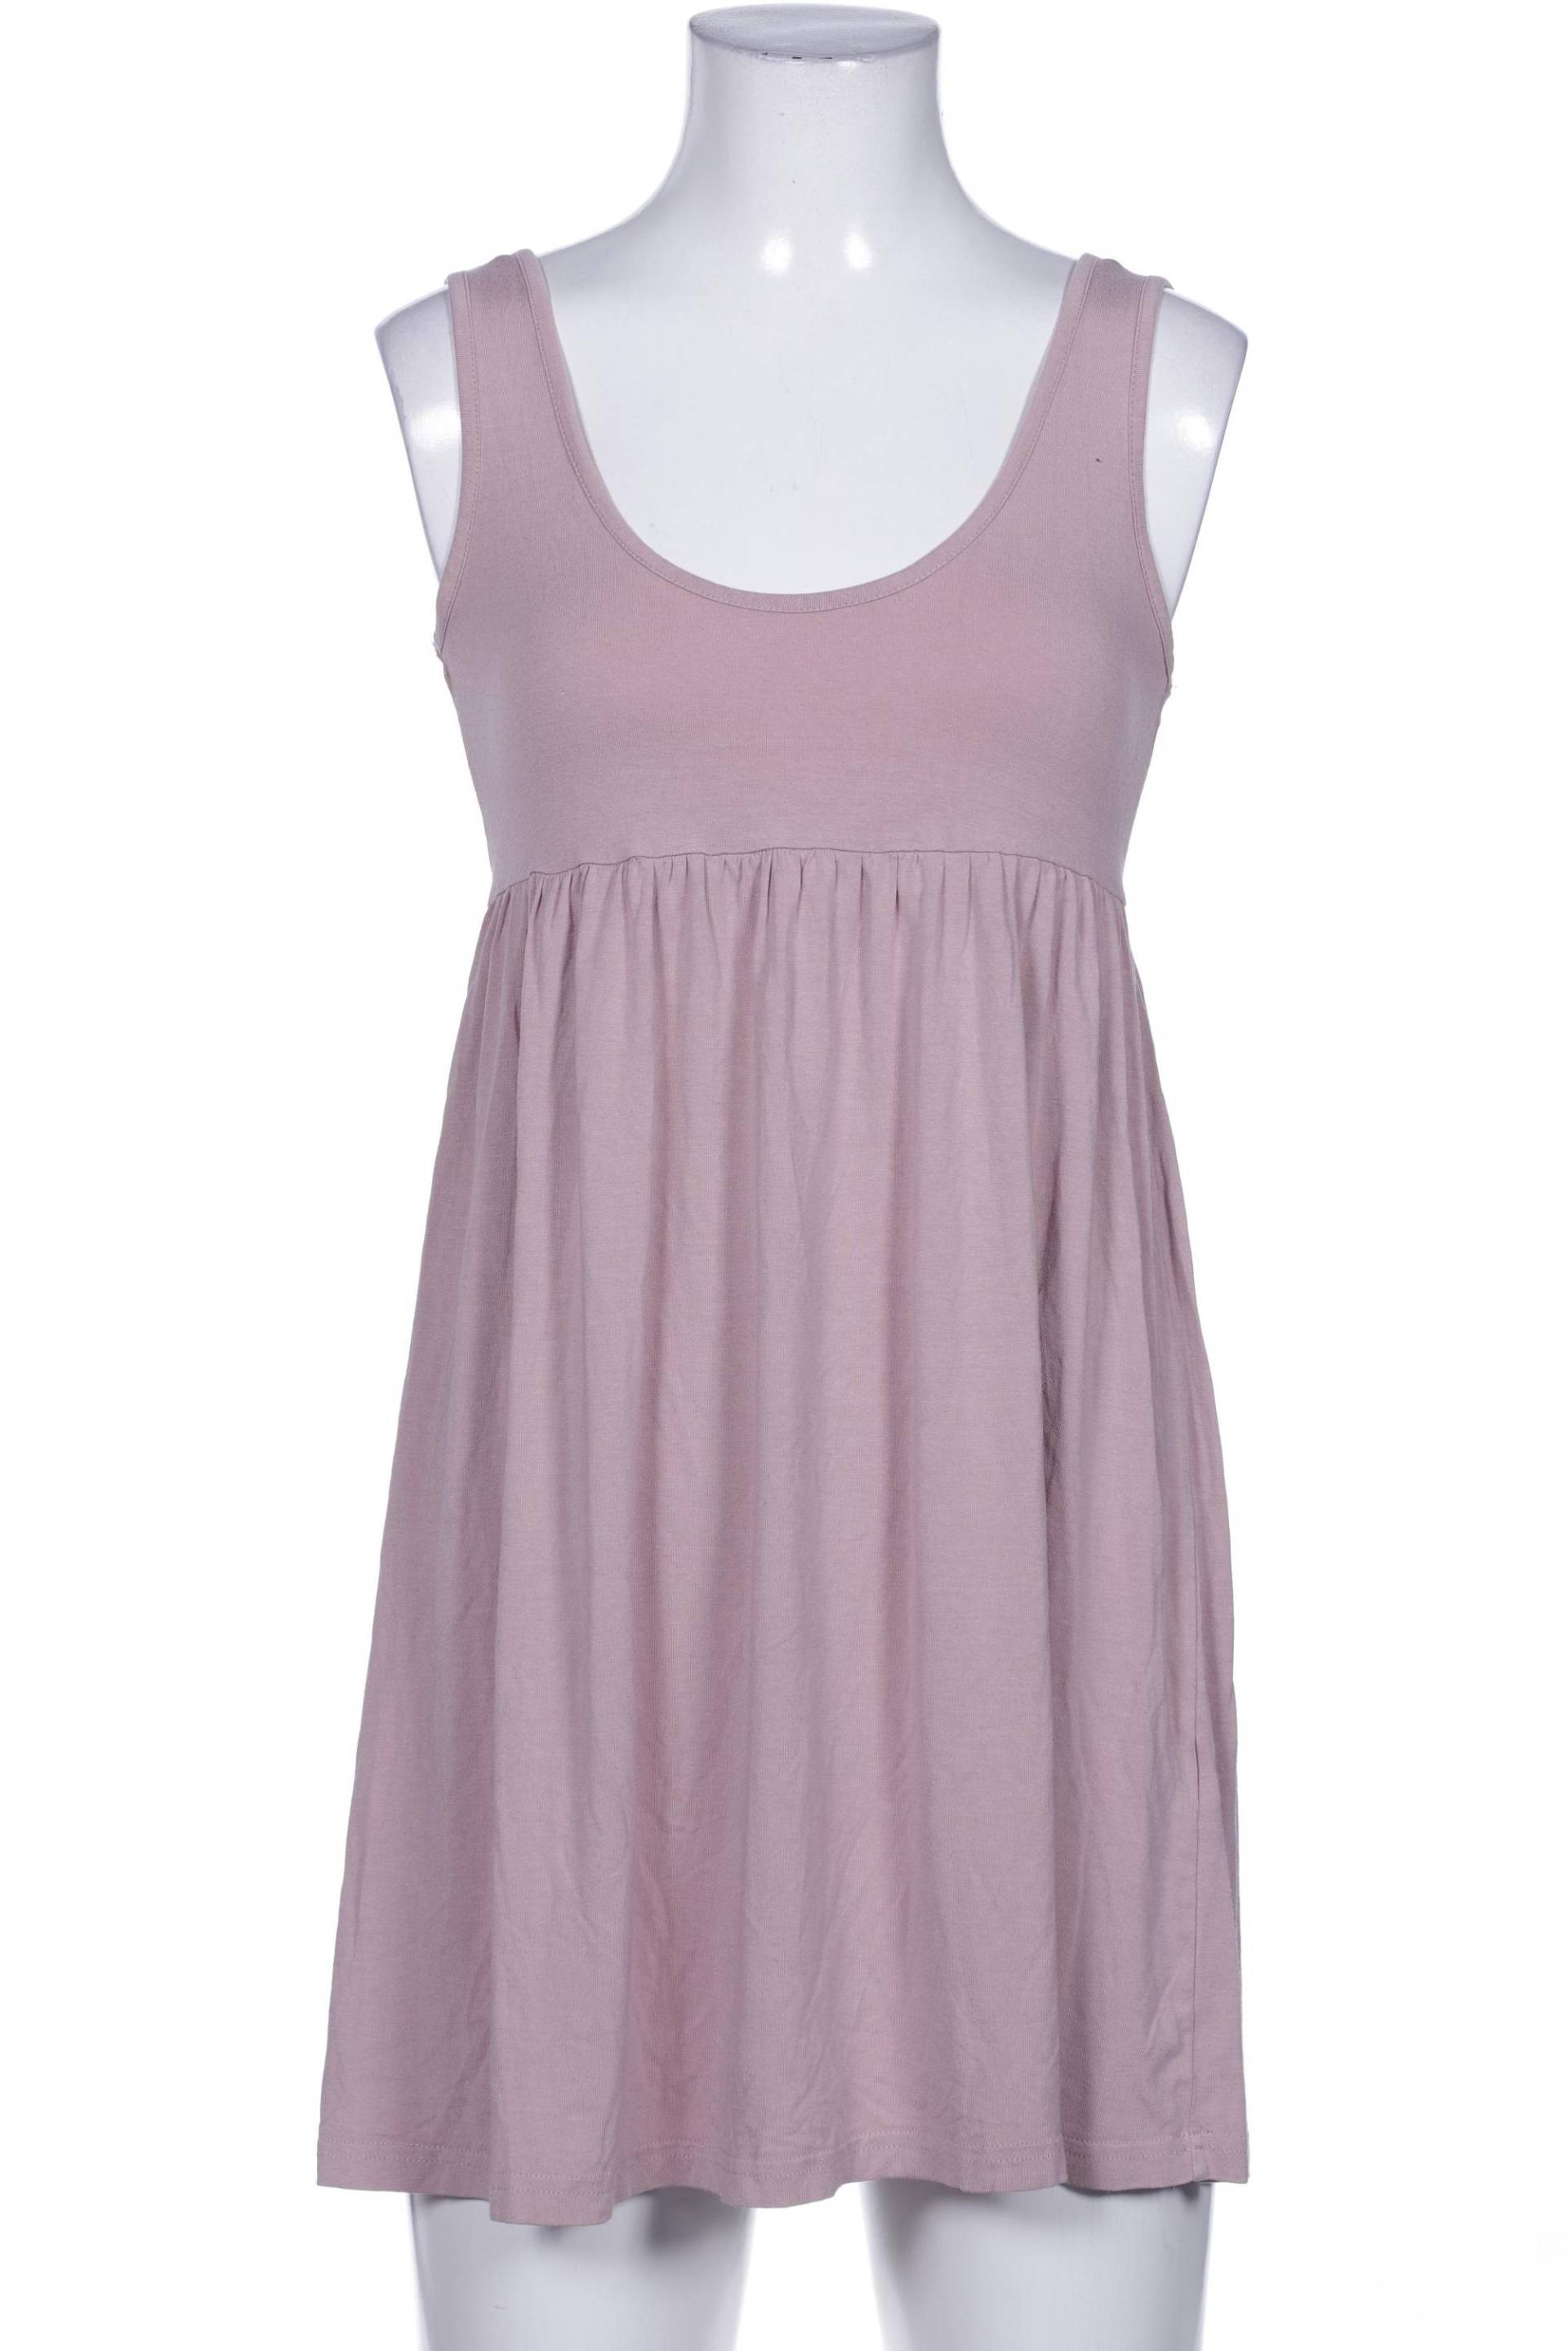 H&M Damen Kleid, pink, Gr. 36 von H&M